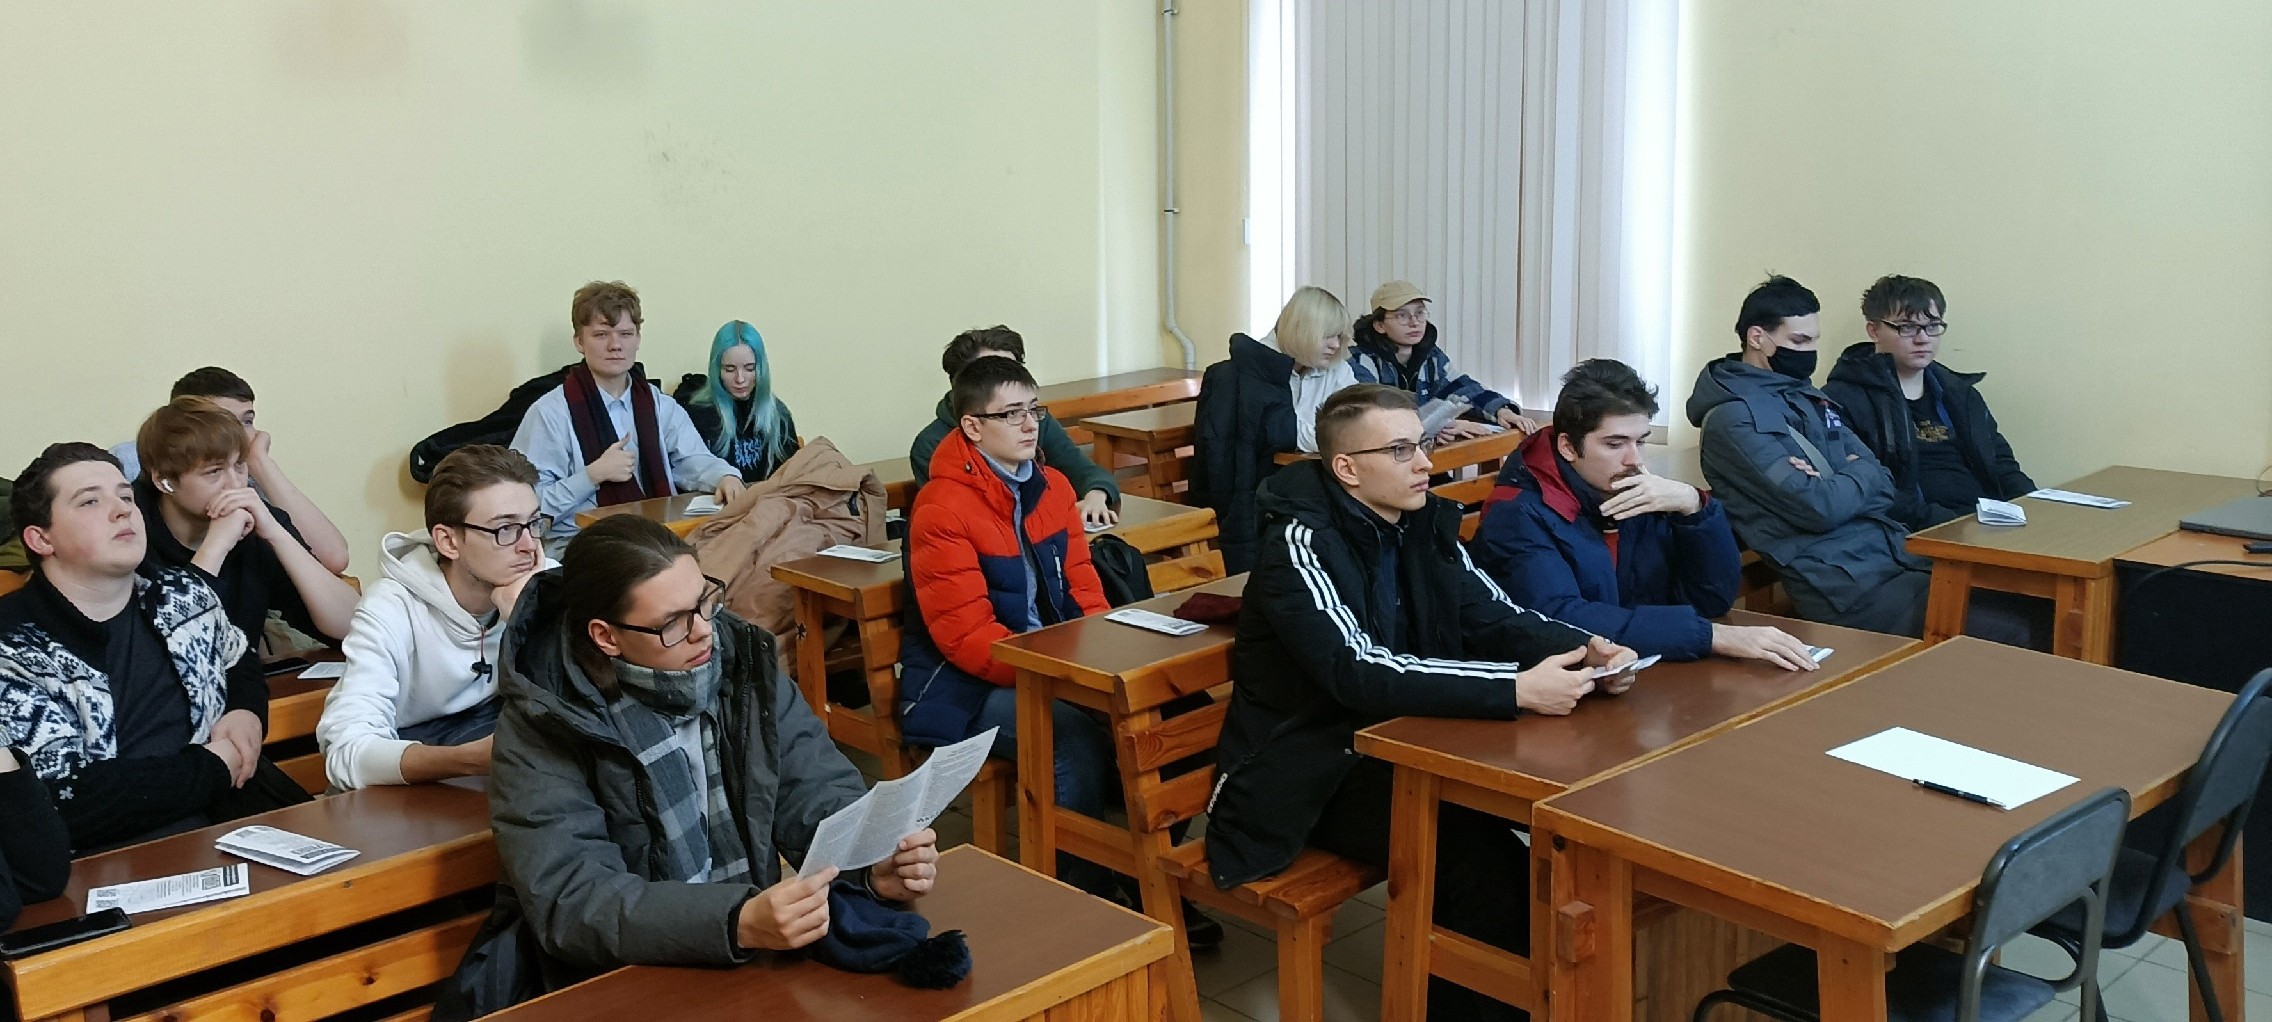 Встреча сотрудников со студентами колледжа радиоэлектроники им. П.Н. Яблочкова.